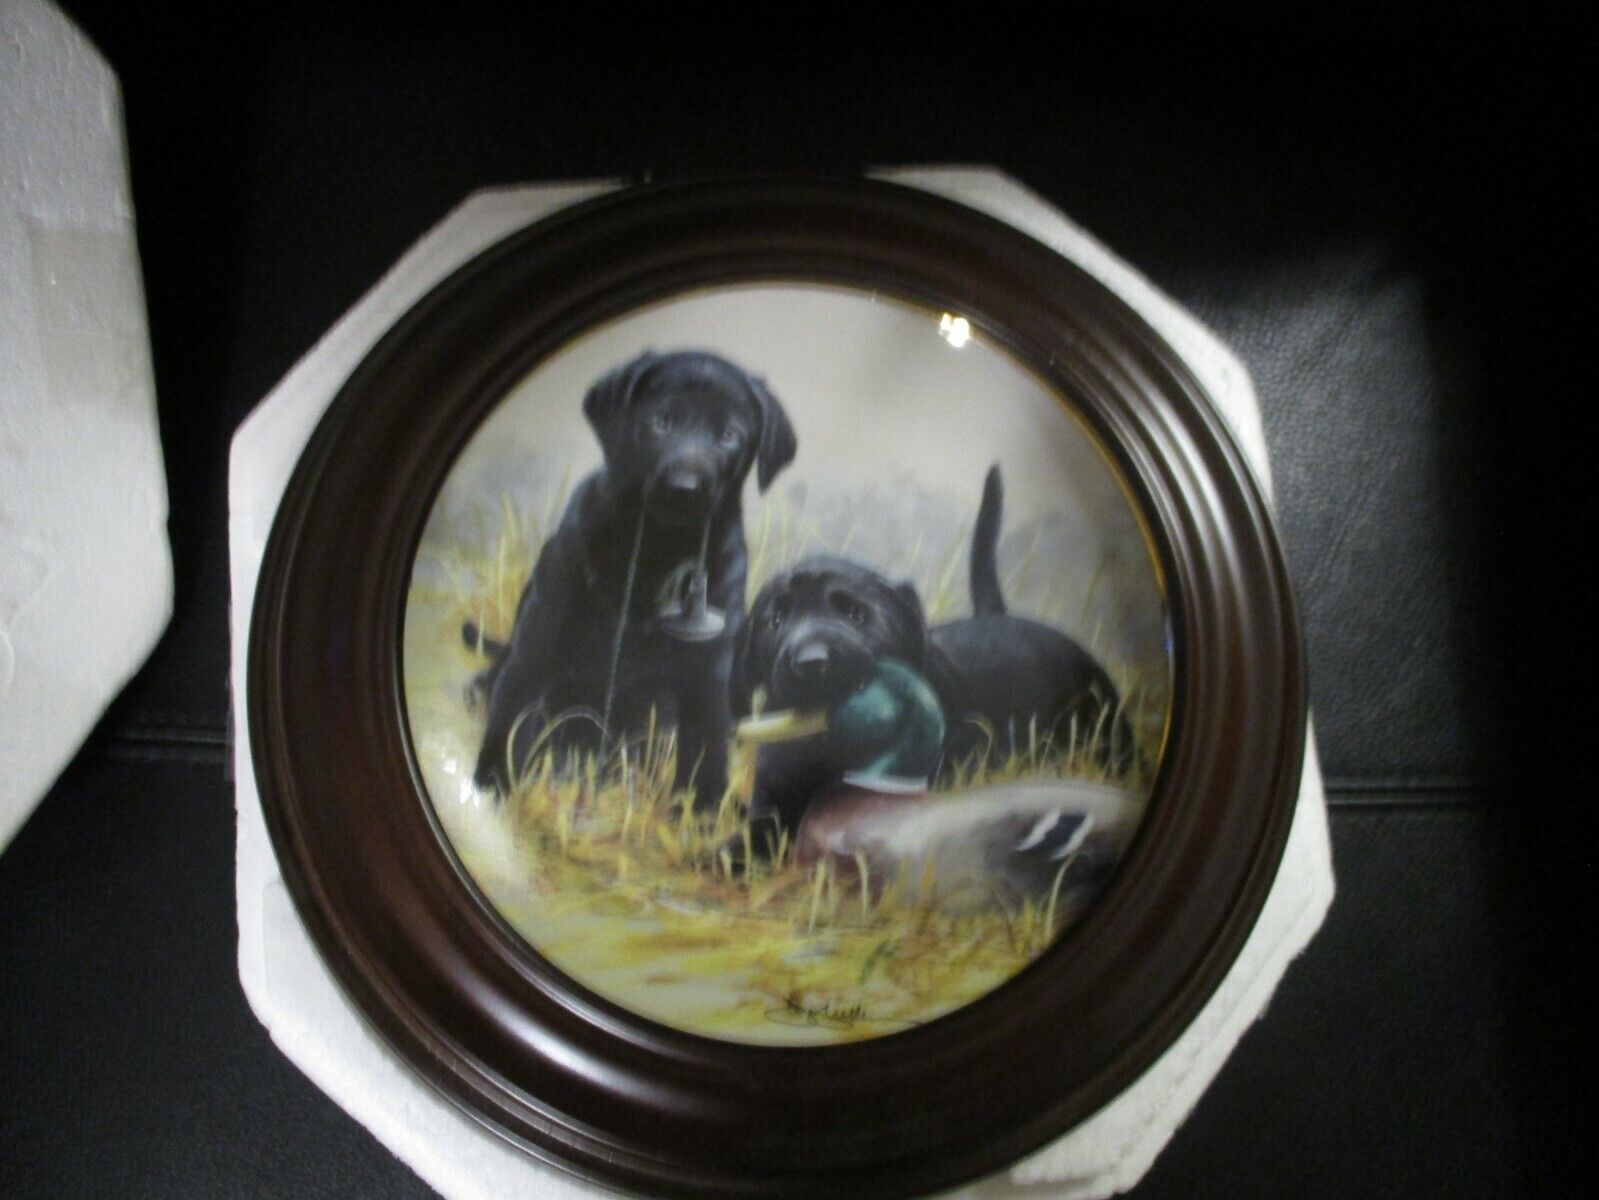 1991 Franklin Mint Black Labrador Pups Wall Plate “BEGINNERS LUCK” By Jim Killen